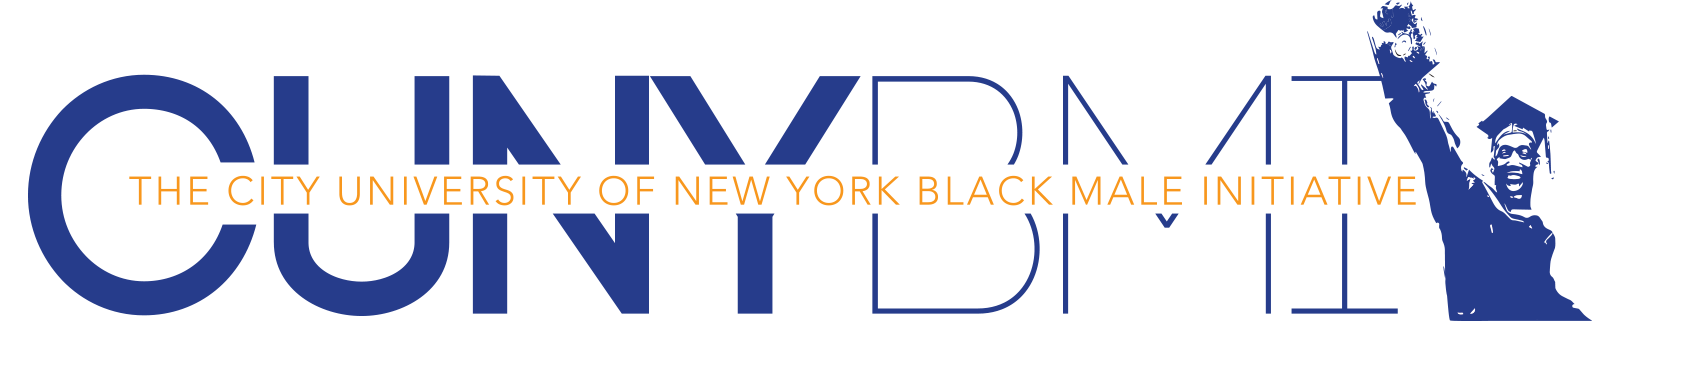 CUNY Black Male Initiative logo